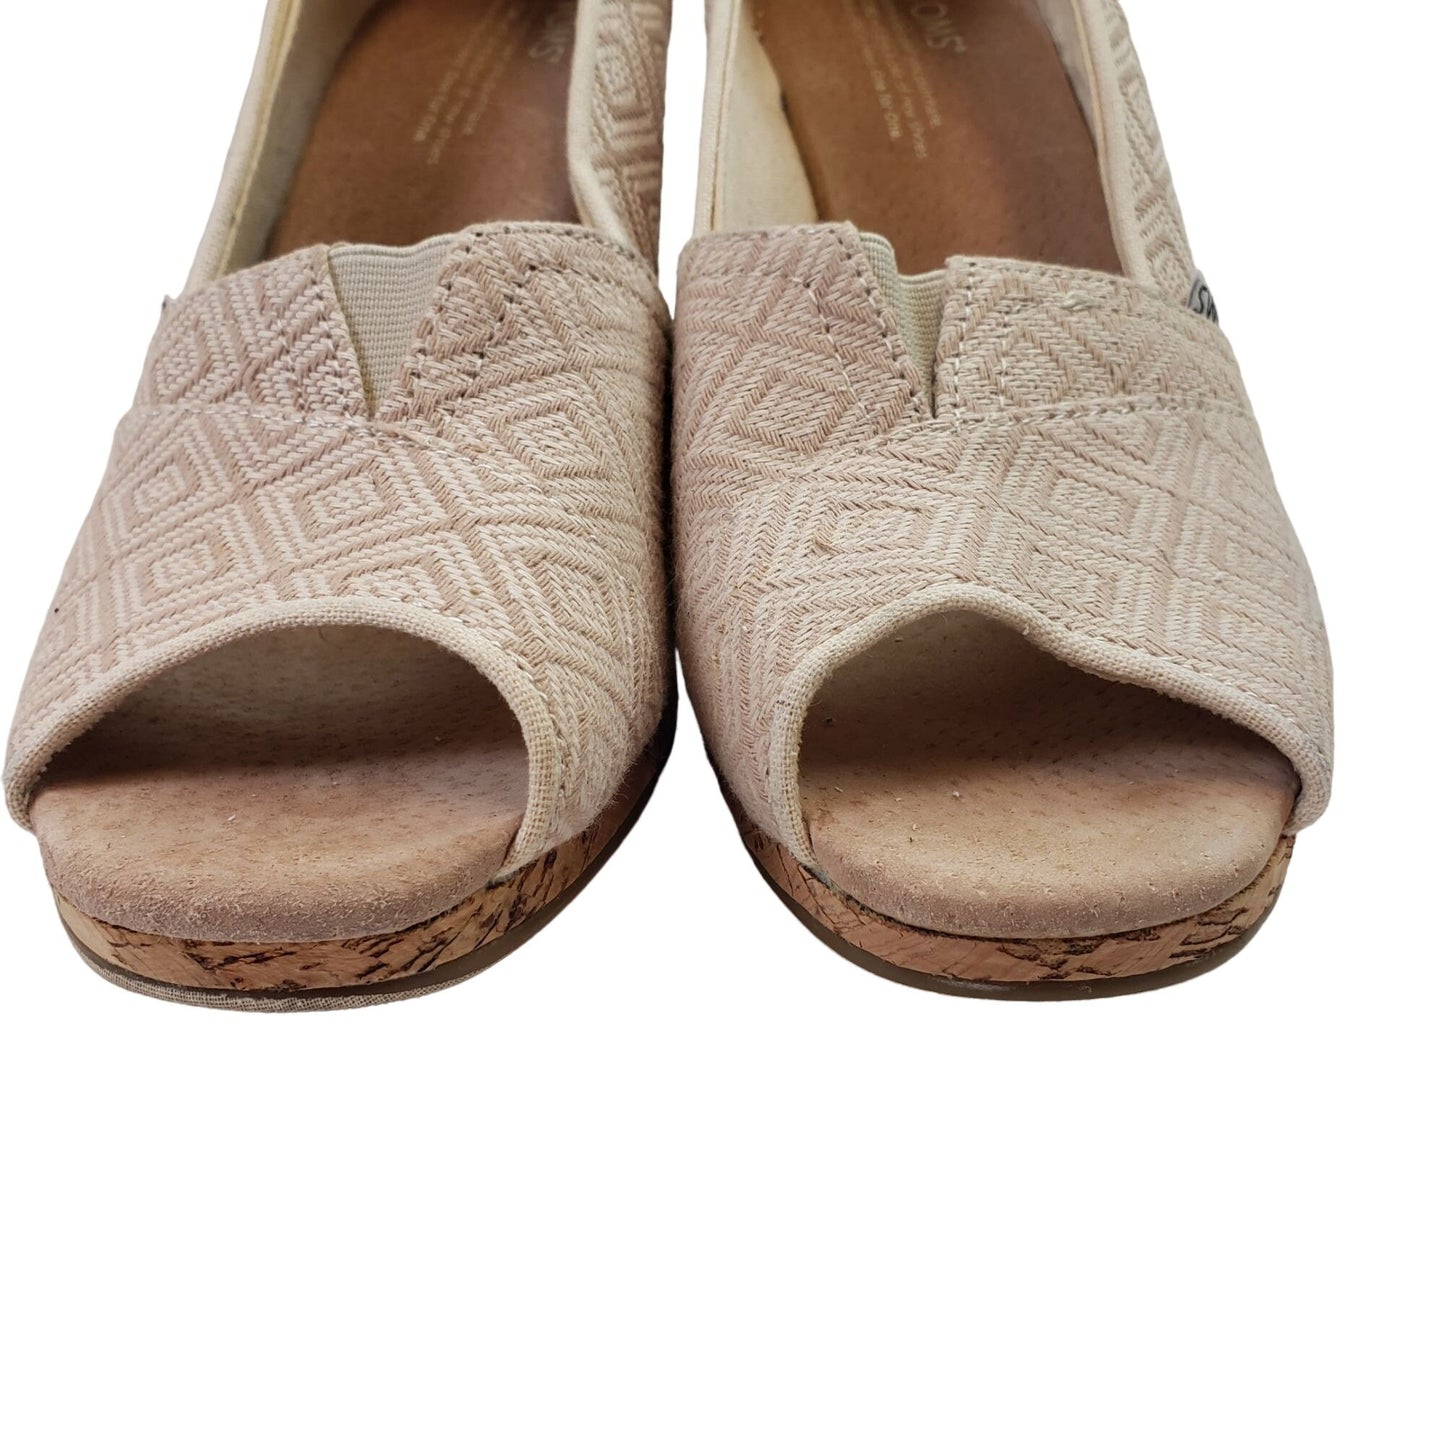 Toms Stella Canvas Cork Wedge Sandals Size 11